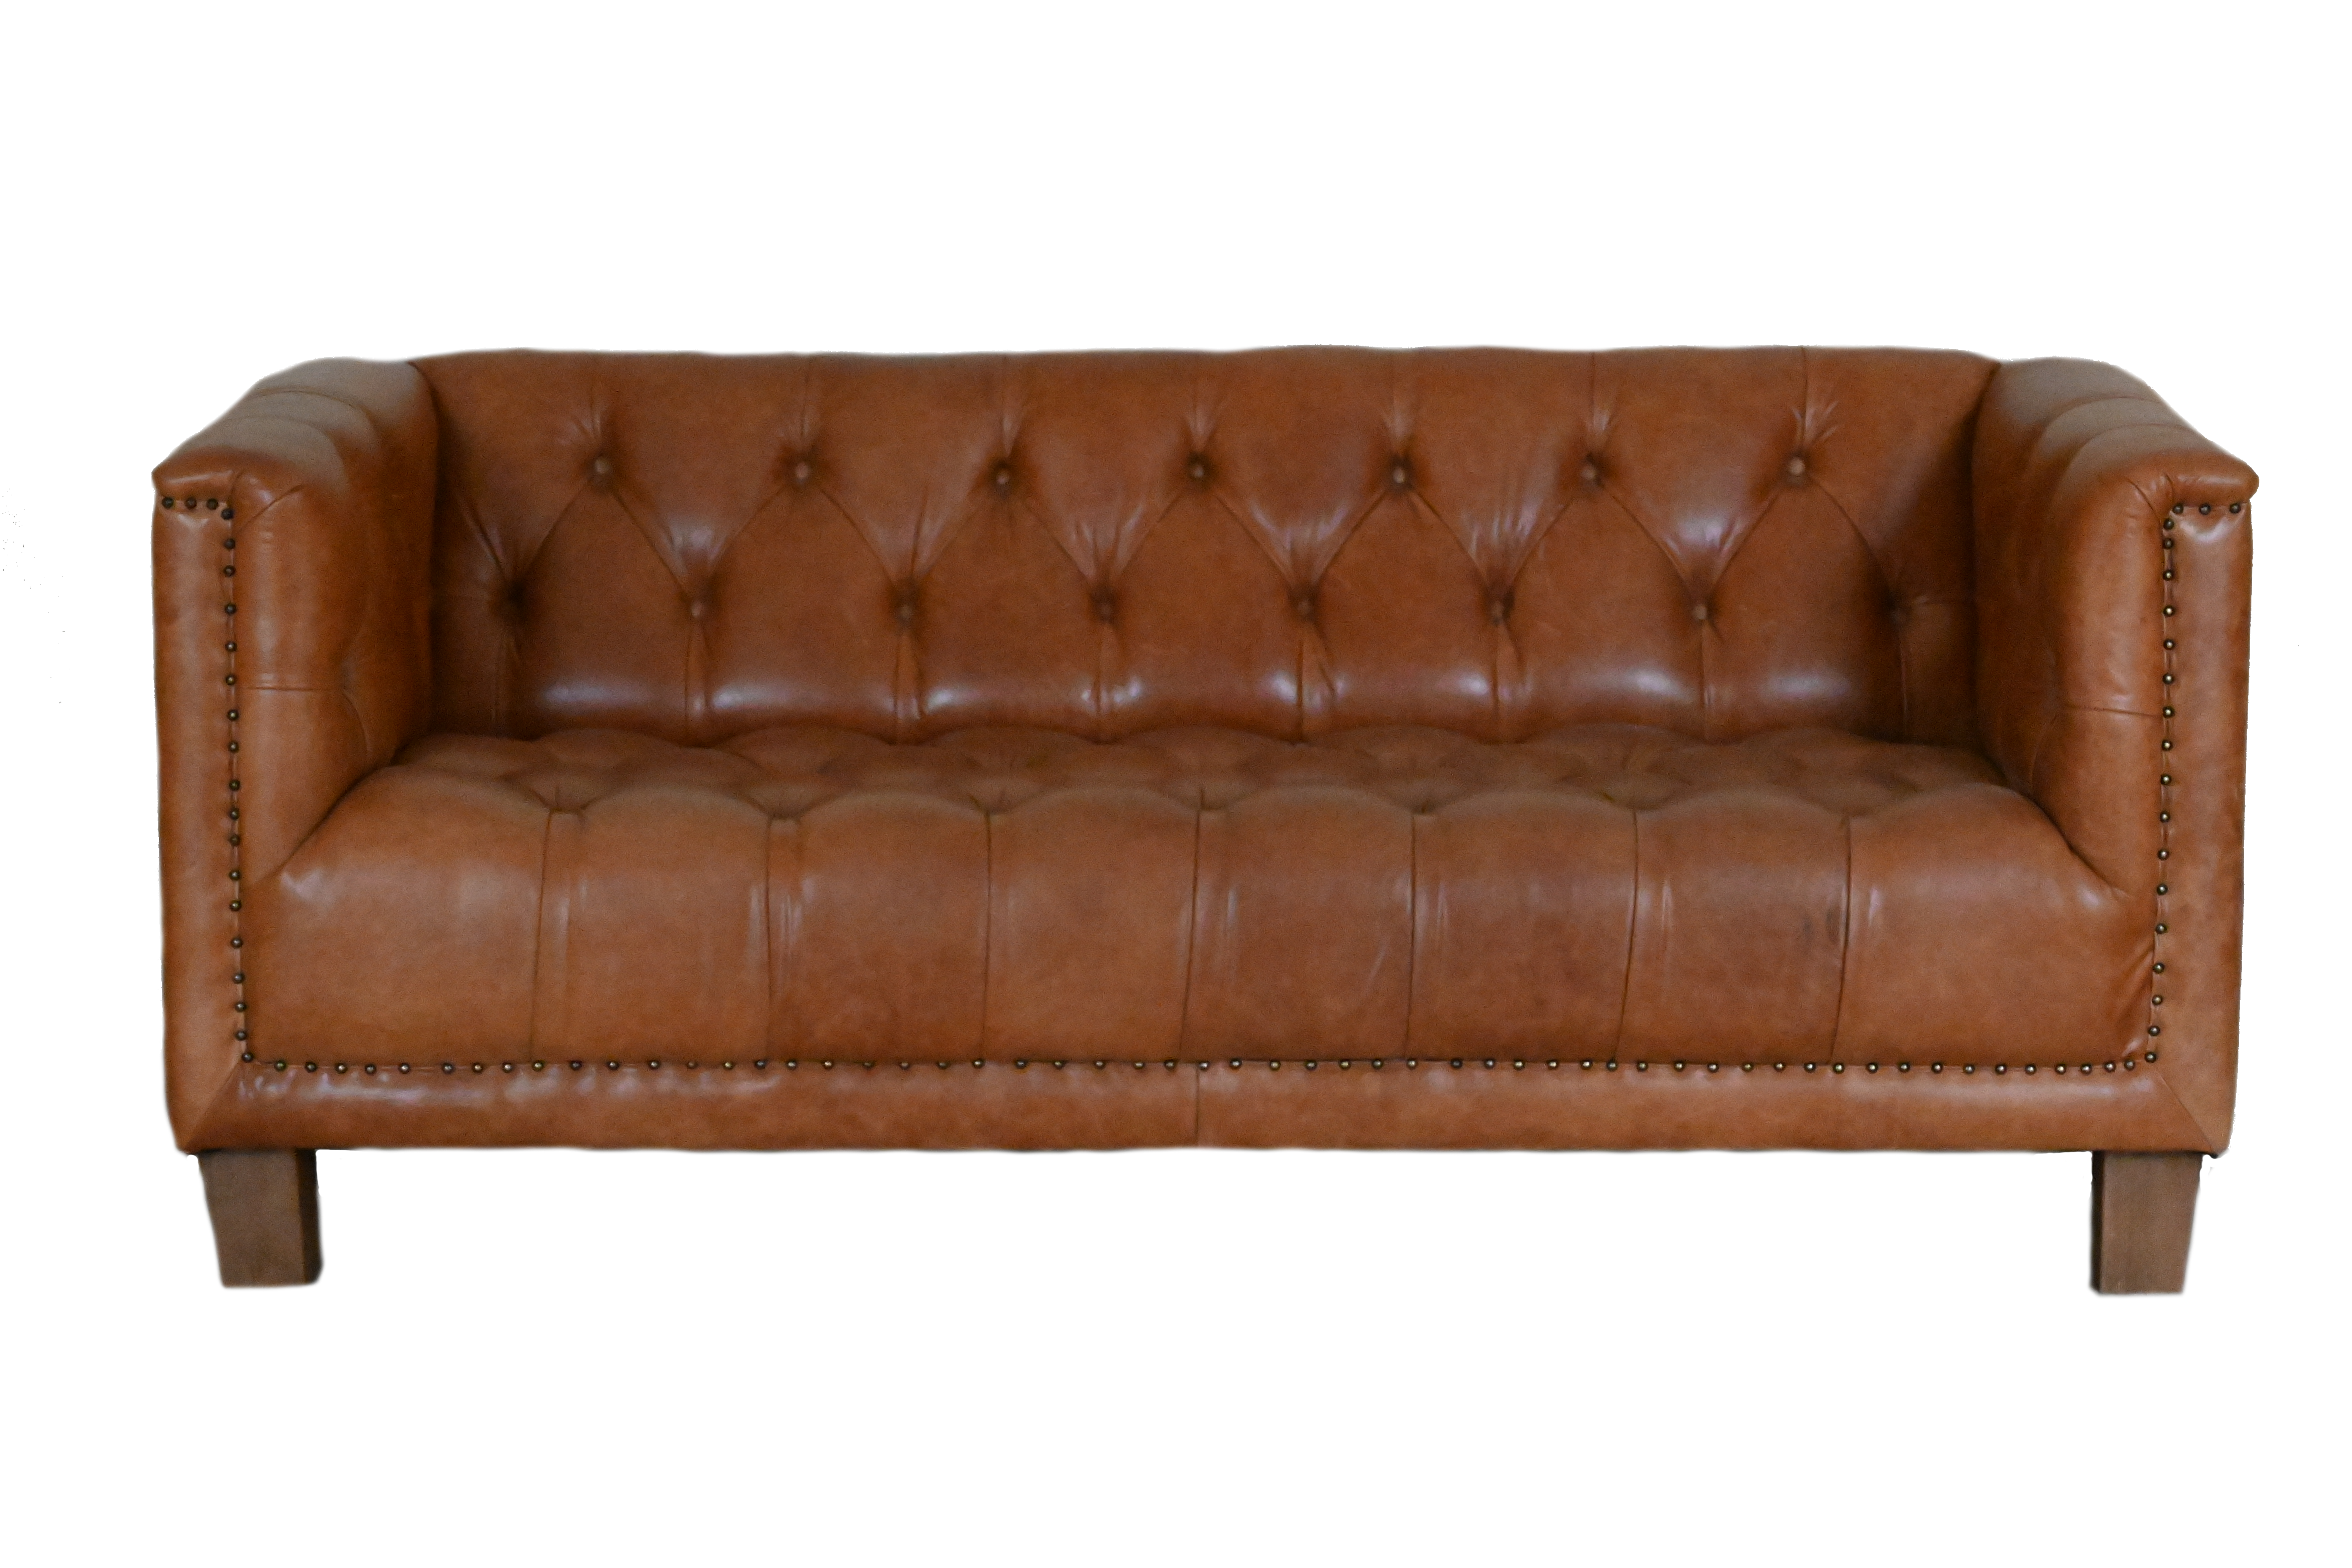 Gebruikte moderne chesterfield bank met geknoopte zitting in cognac kleur